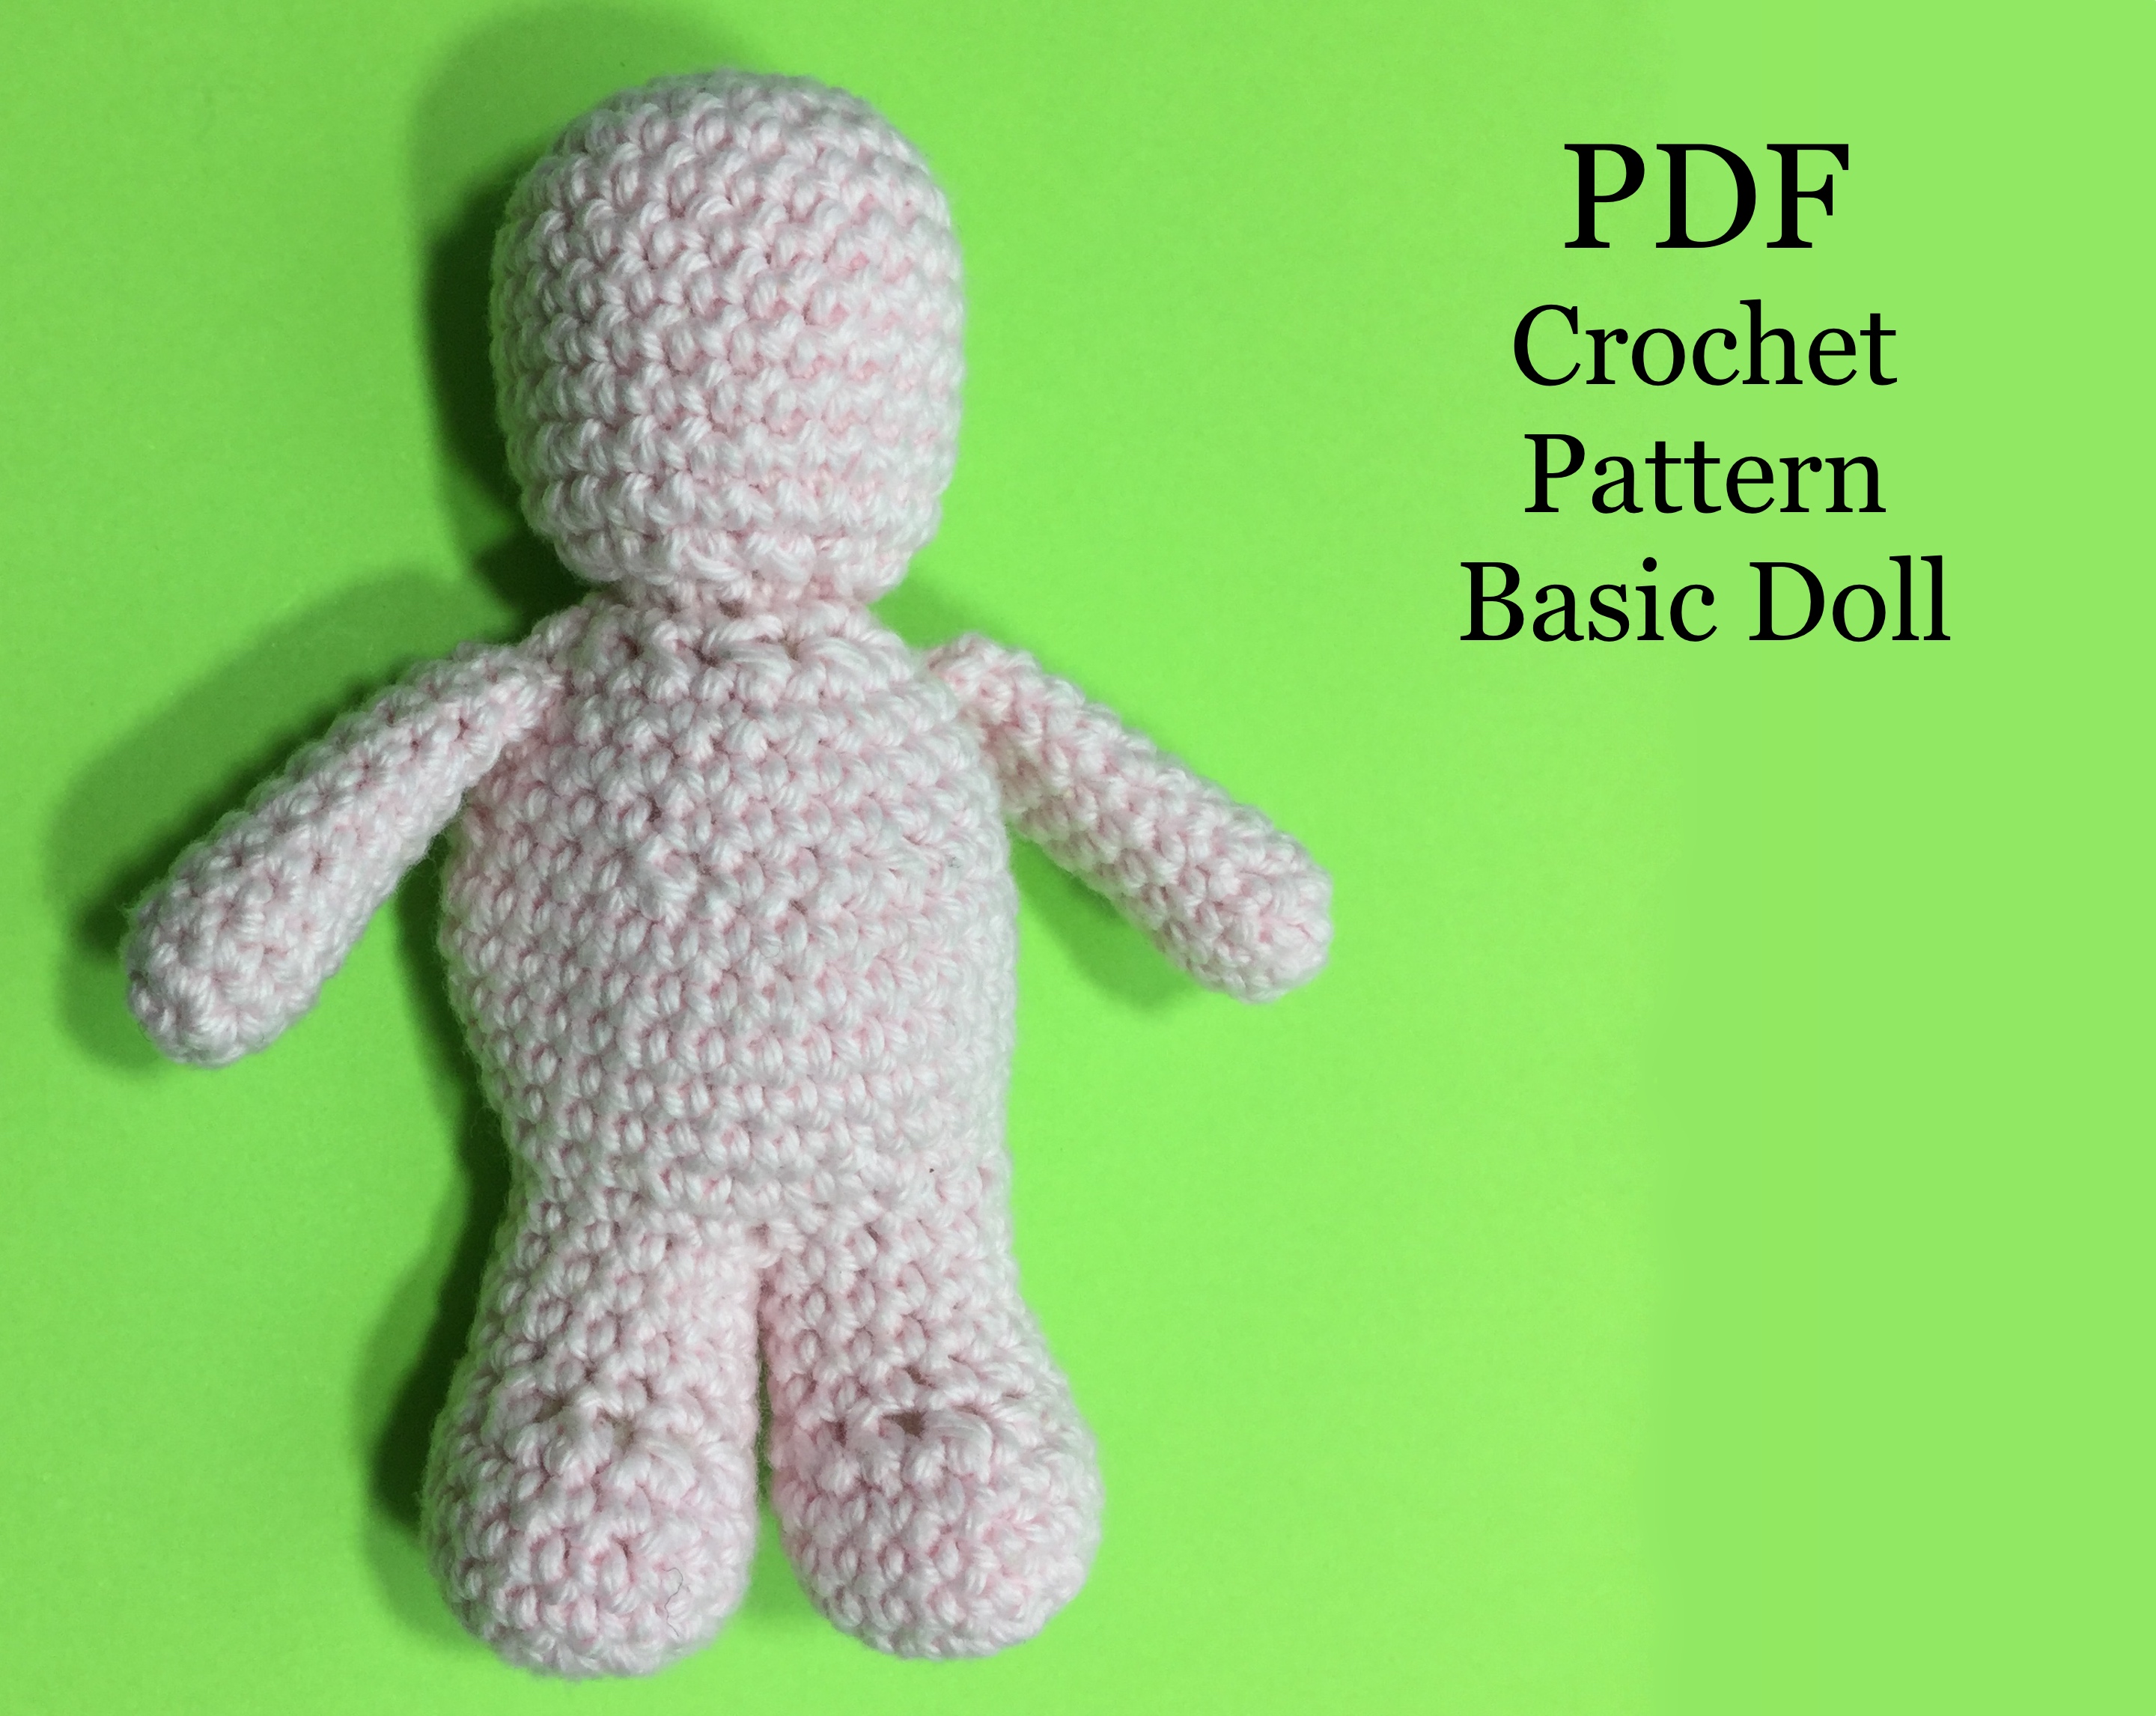 Basic_Doll_Crochet.jpg